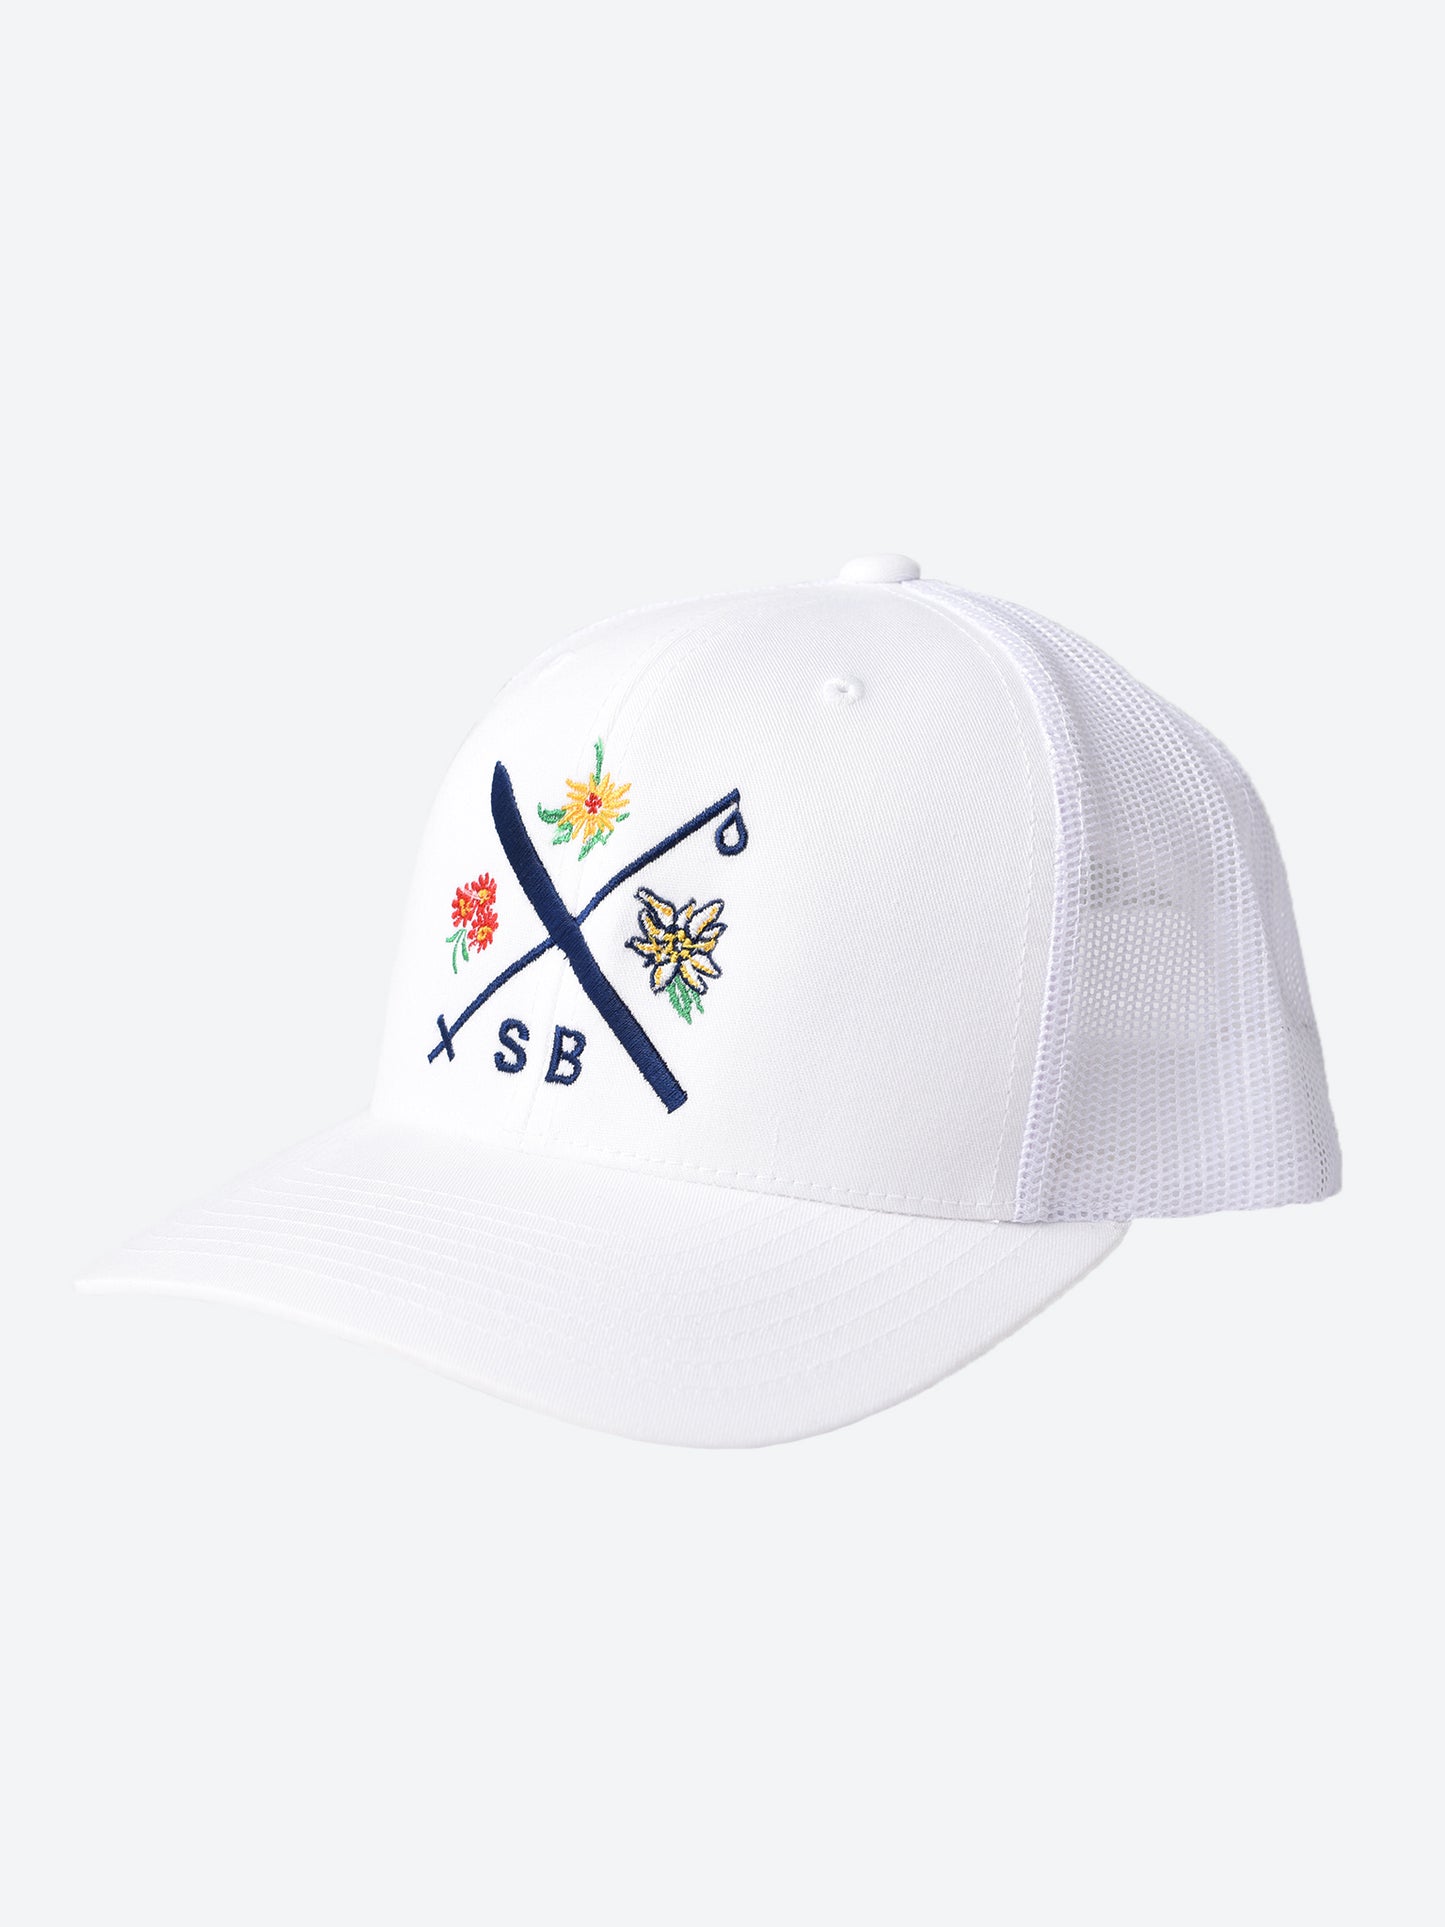 Saint Bernard Men's Ski Cross Flower Hat